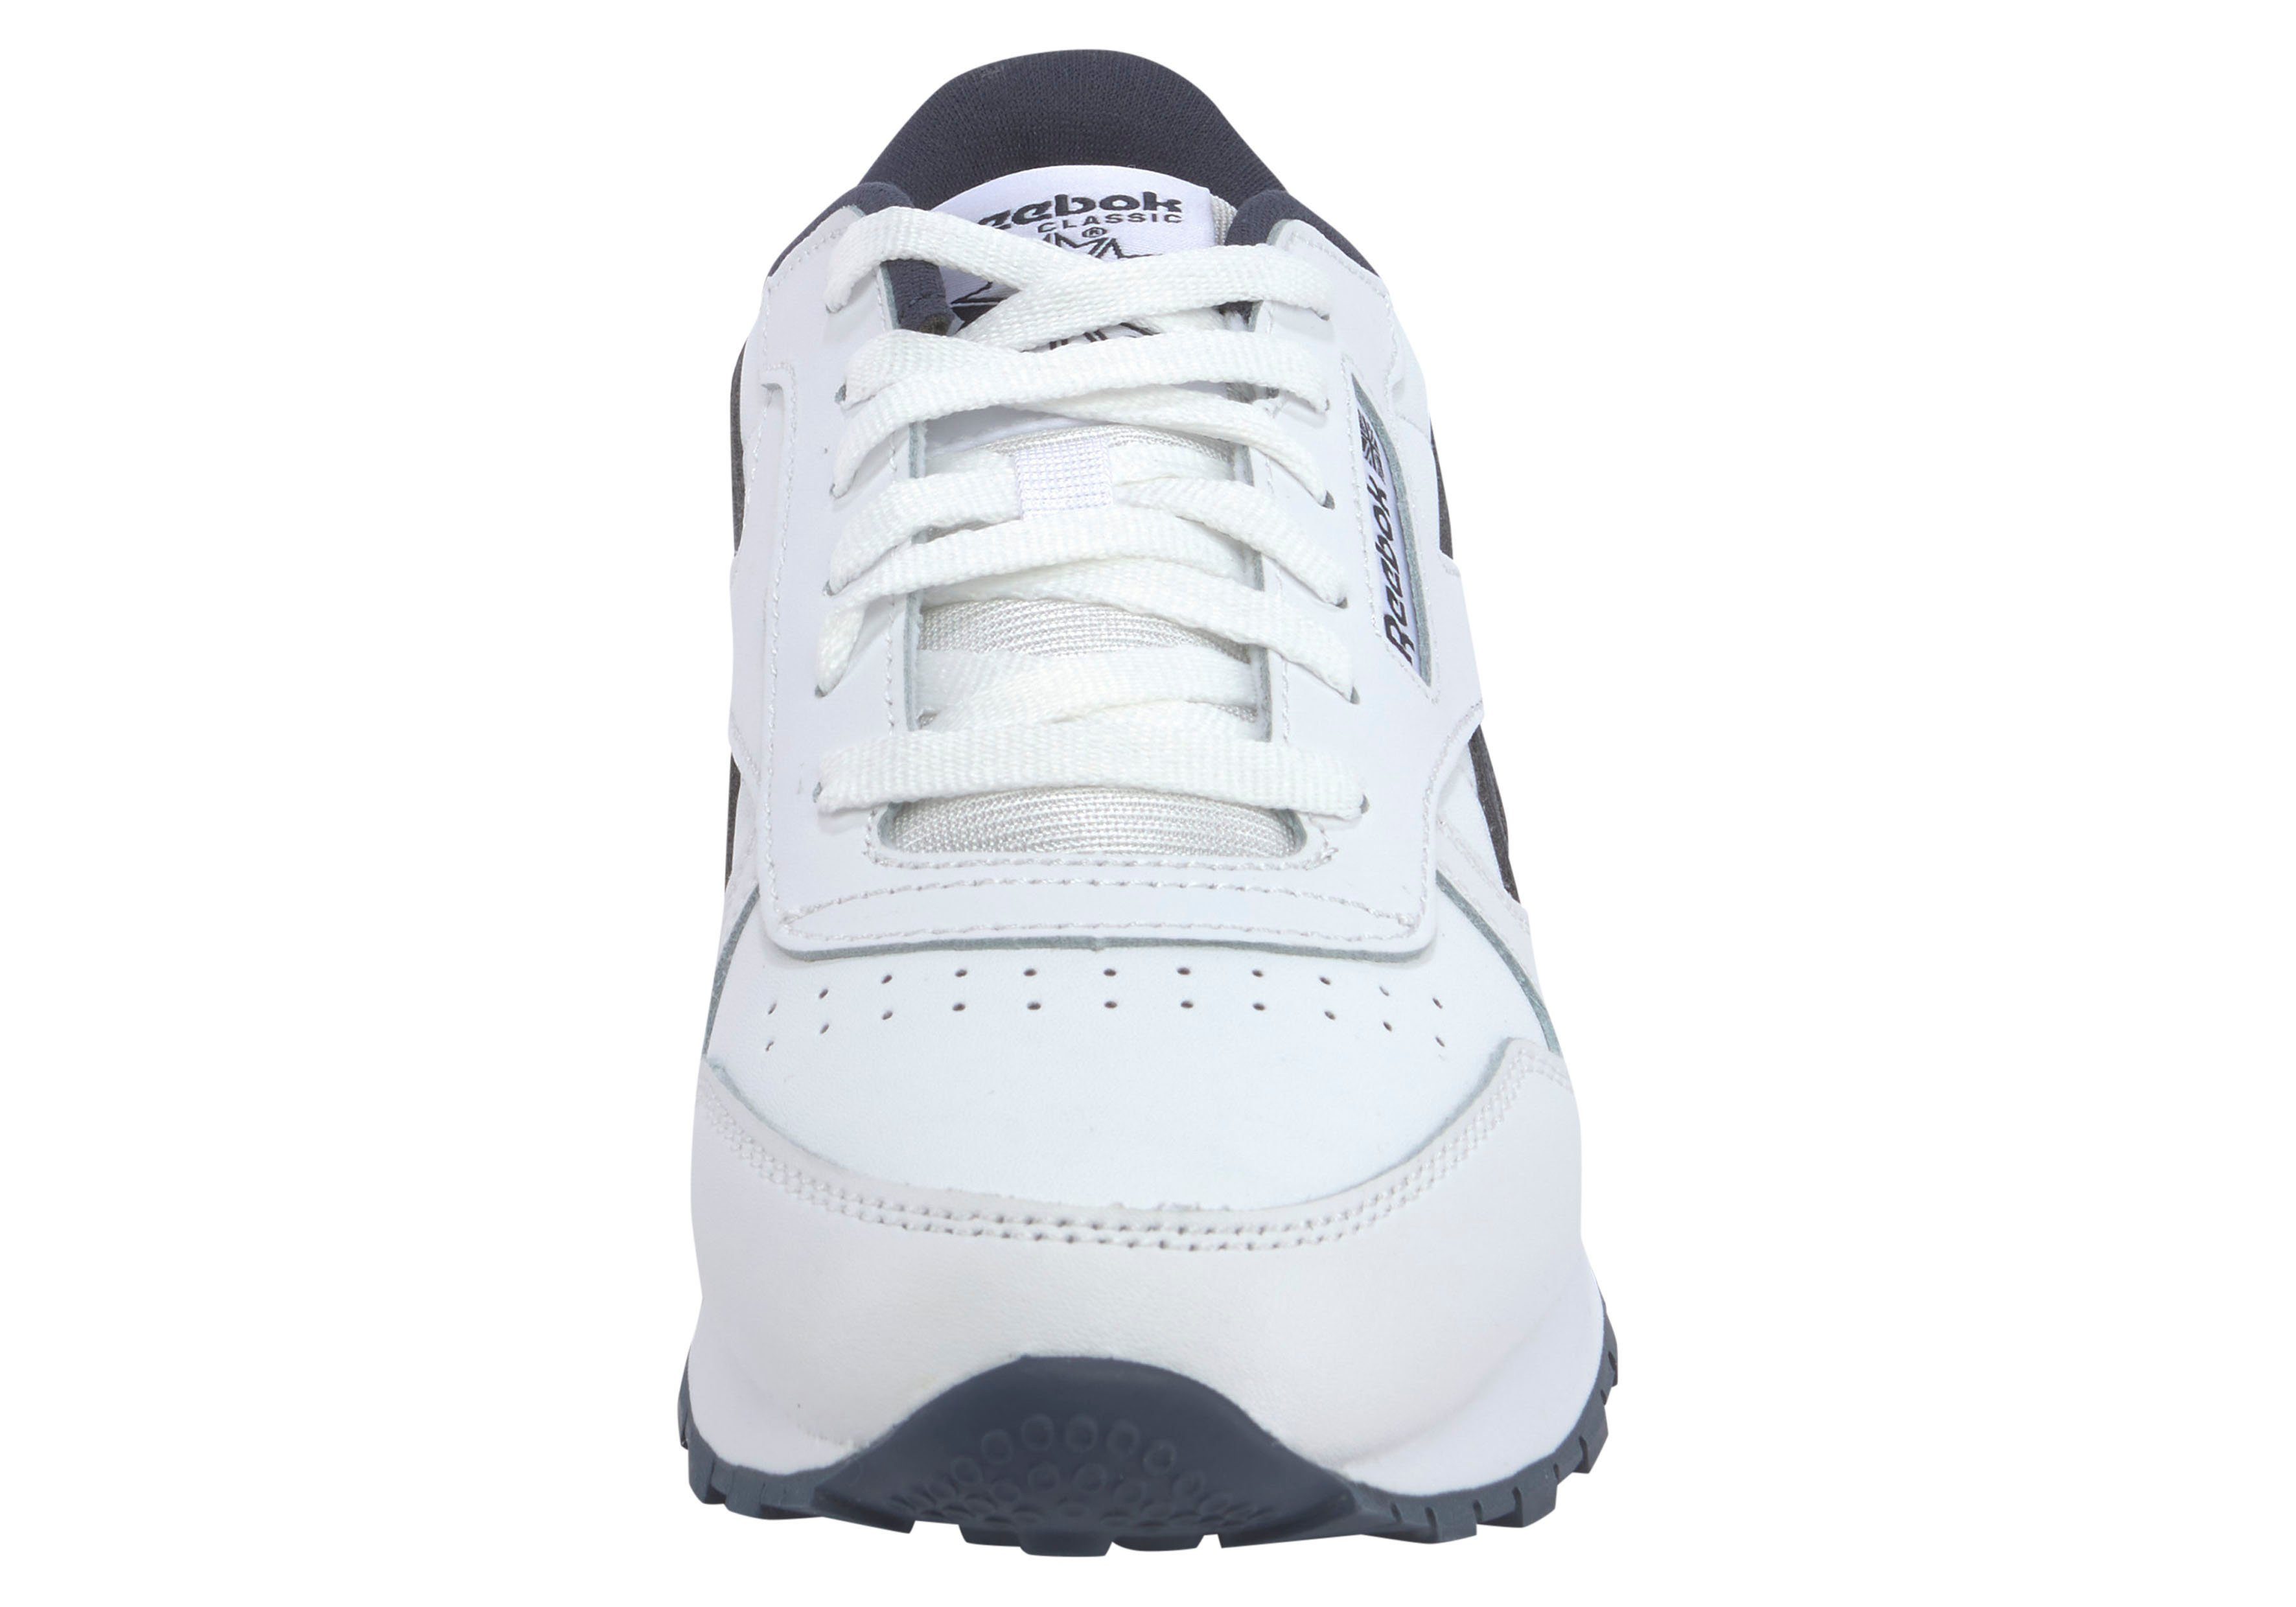 Reebok Classic CLASSIC weiß-schwarz LEATHER Sneaker